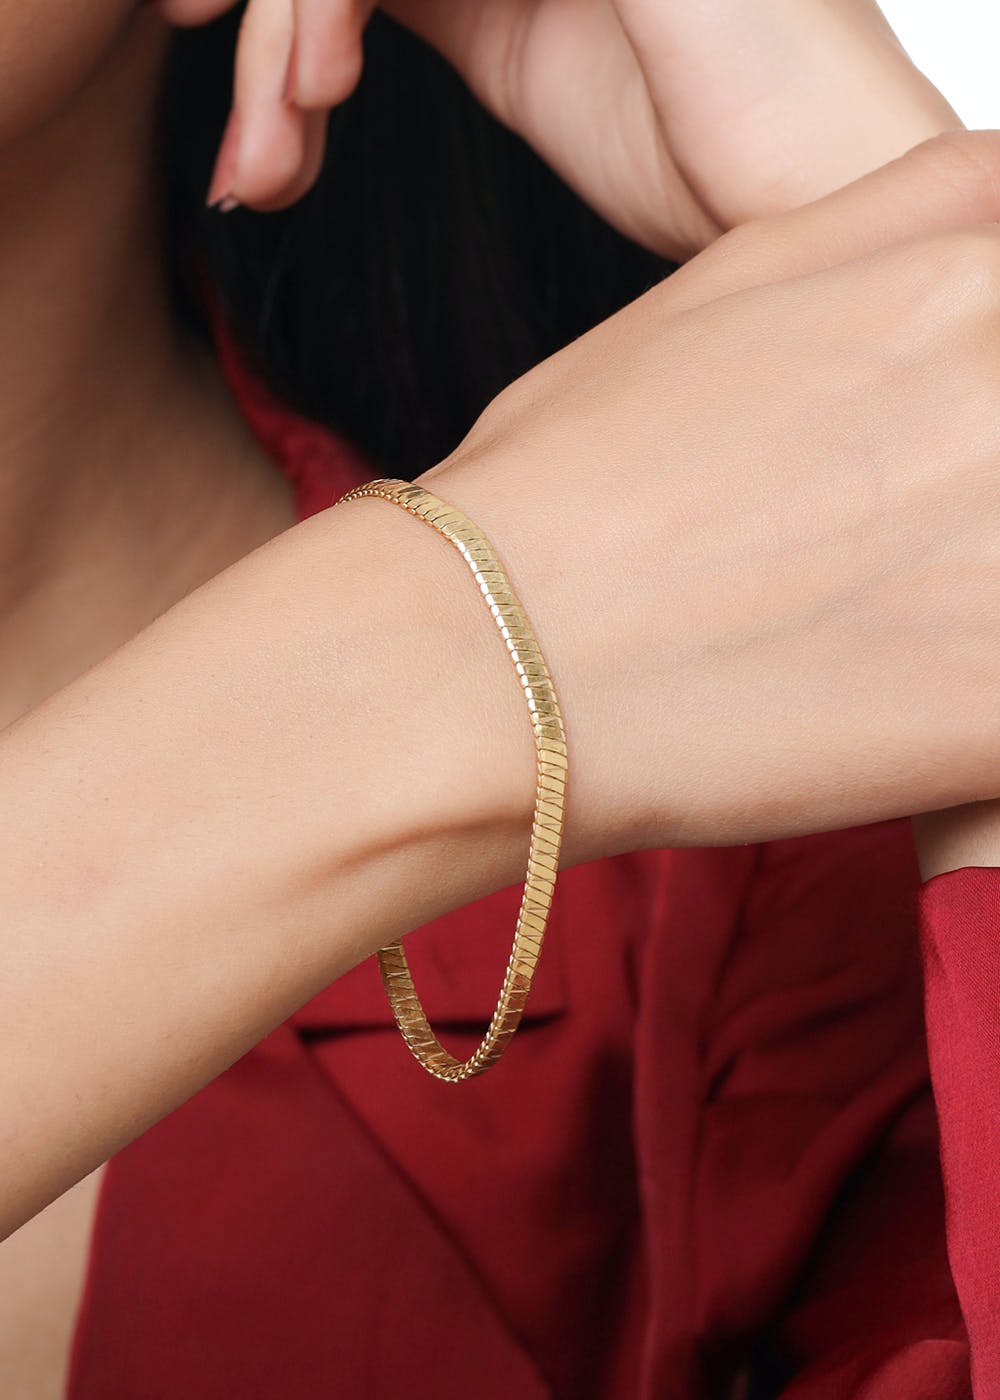 Tanishq Gold Chain Bracelets Starting at 2gms😍✨ | New & Trendy Bracelet  Designs for Festive Season💫💫 - YouTube